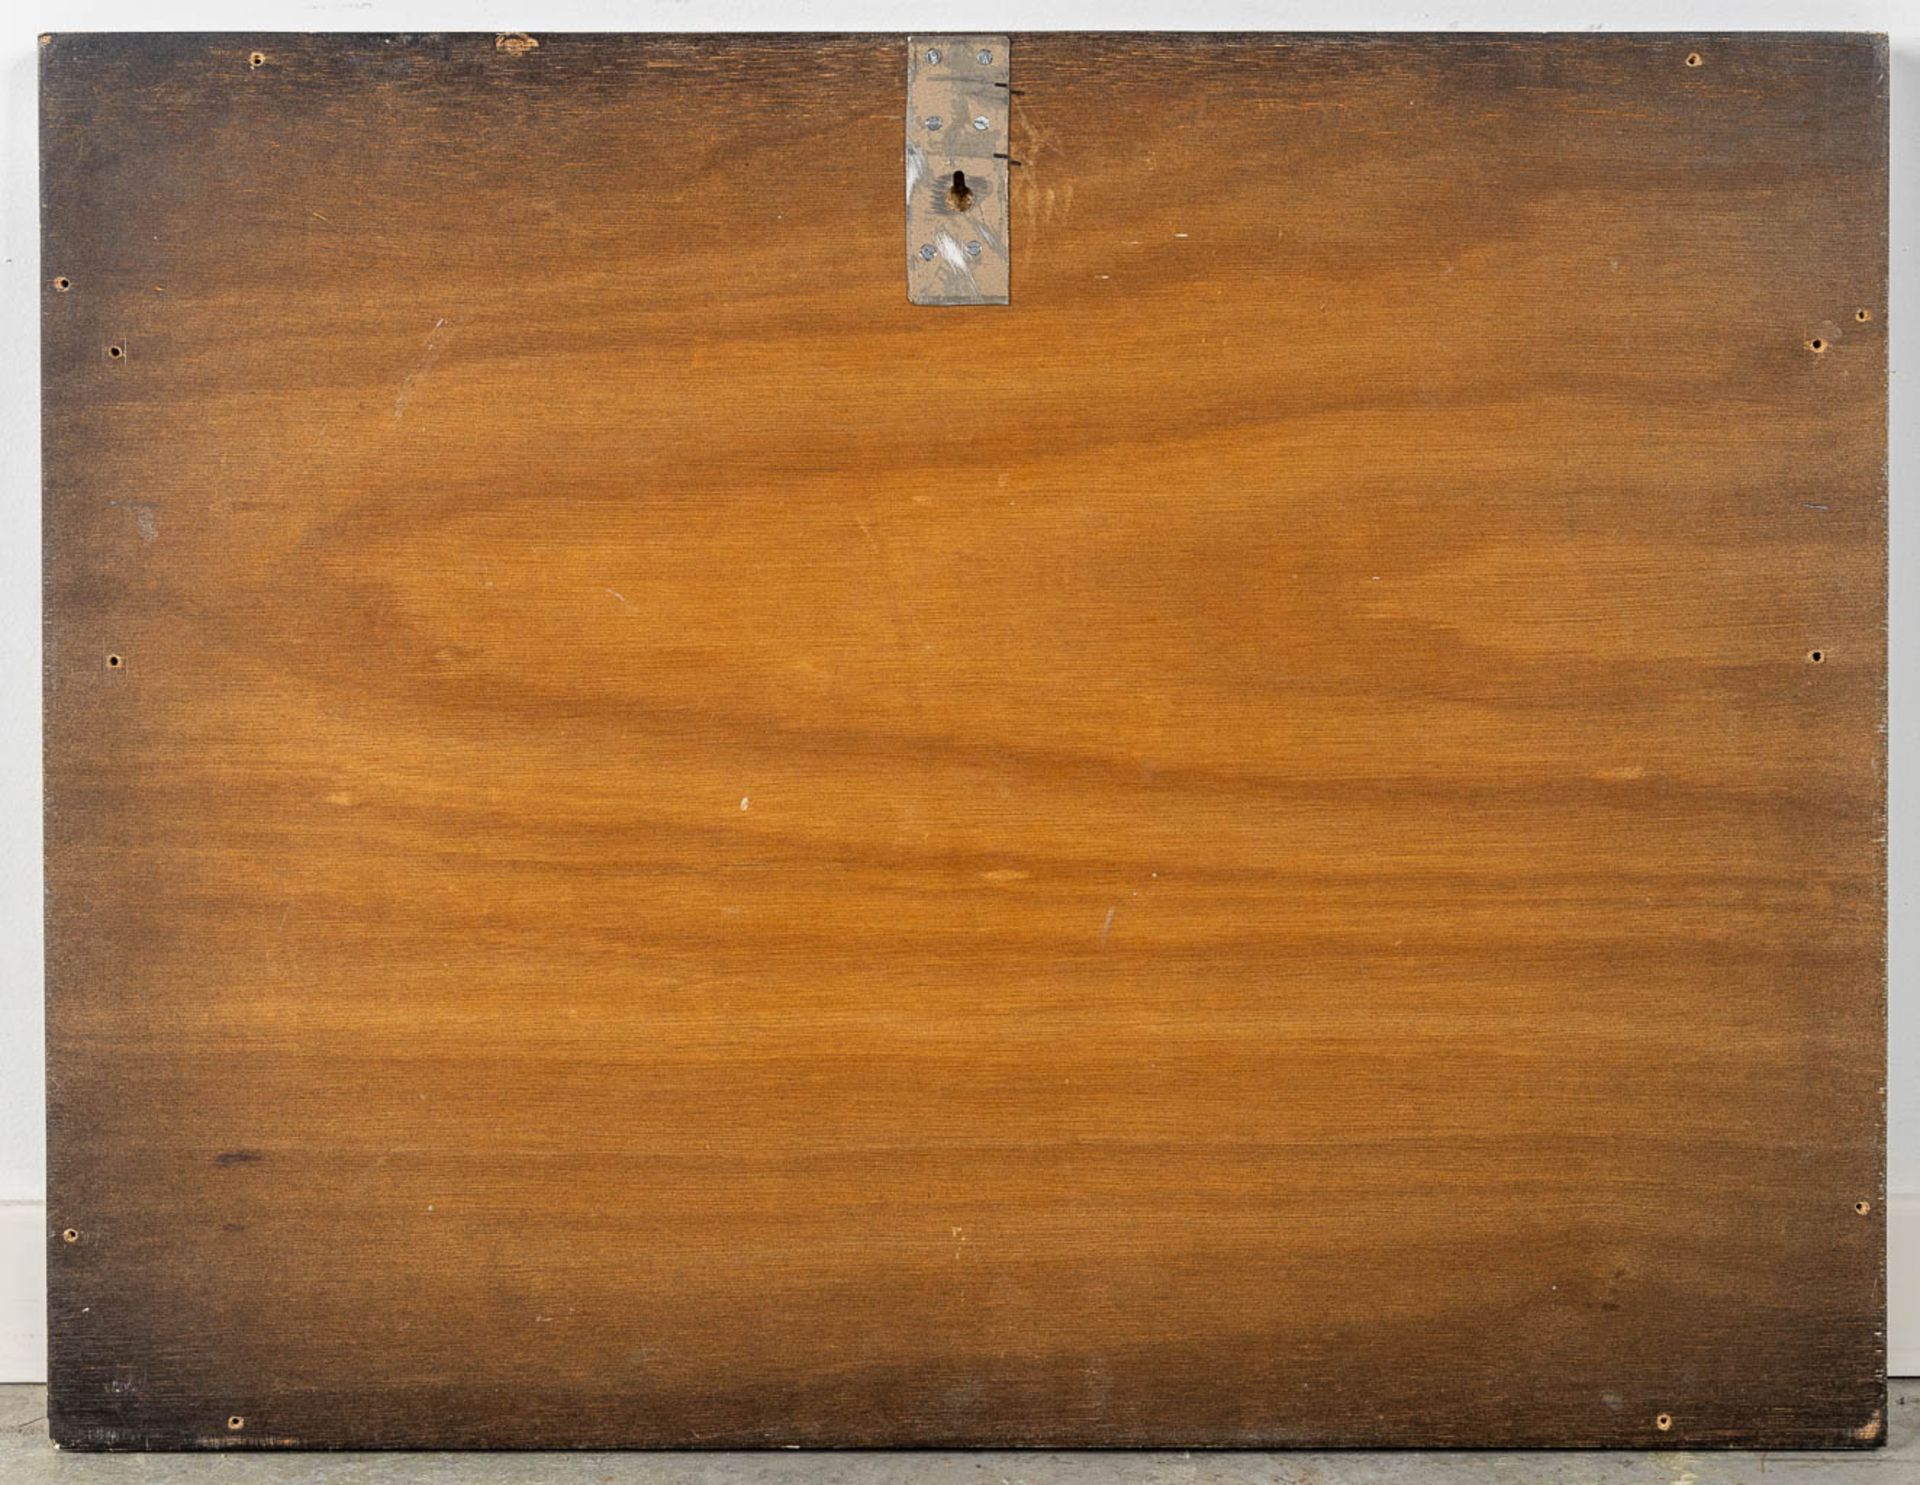 Robert KETELSLEGERS (1939) 'Three Ladies' oil on board. 1966. (W:65 x H:50 cm) - Image 6 of 6